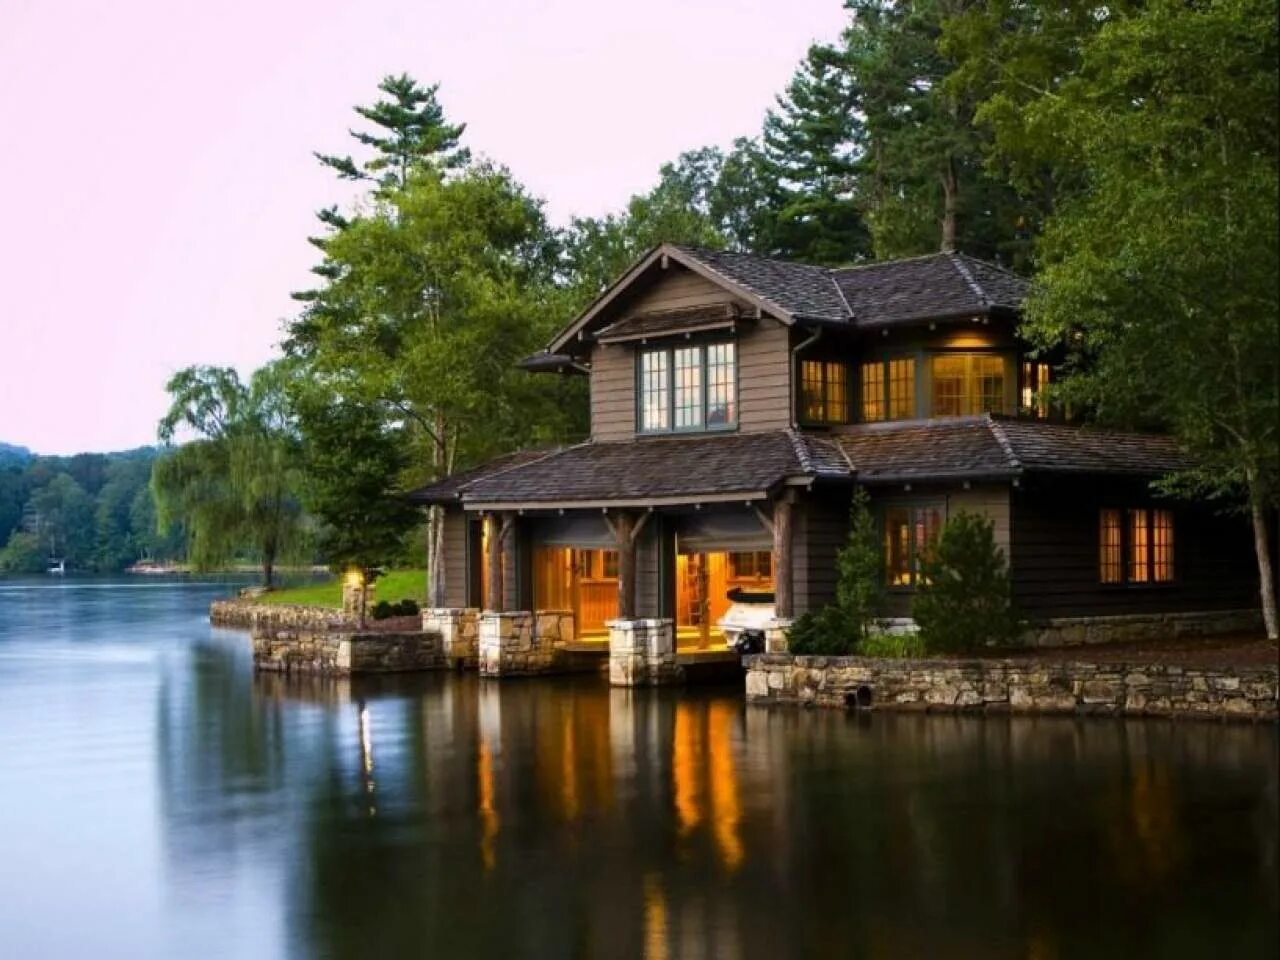 House near the lake. Онтарио Канада коттеджи у озера. Дом у озера (США, 2006). Дом Гилбертов у озера.